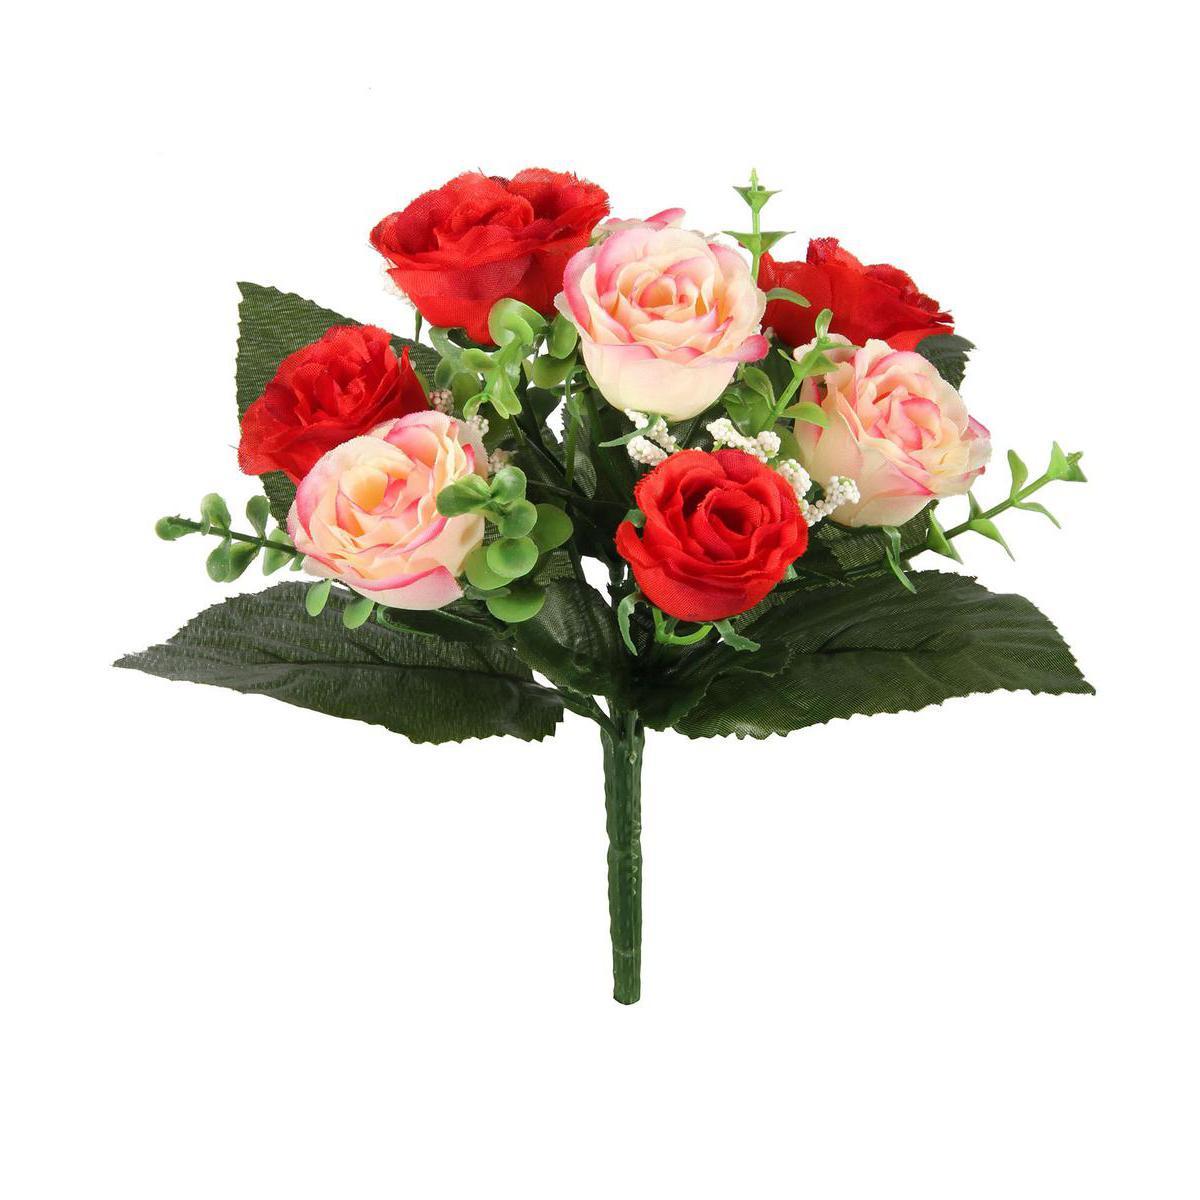 Bouquet de 8 boutons de roses et gypso - Plastique et polyester - Hauteur 32 cm - Rouge, blanc et rose